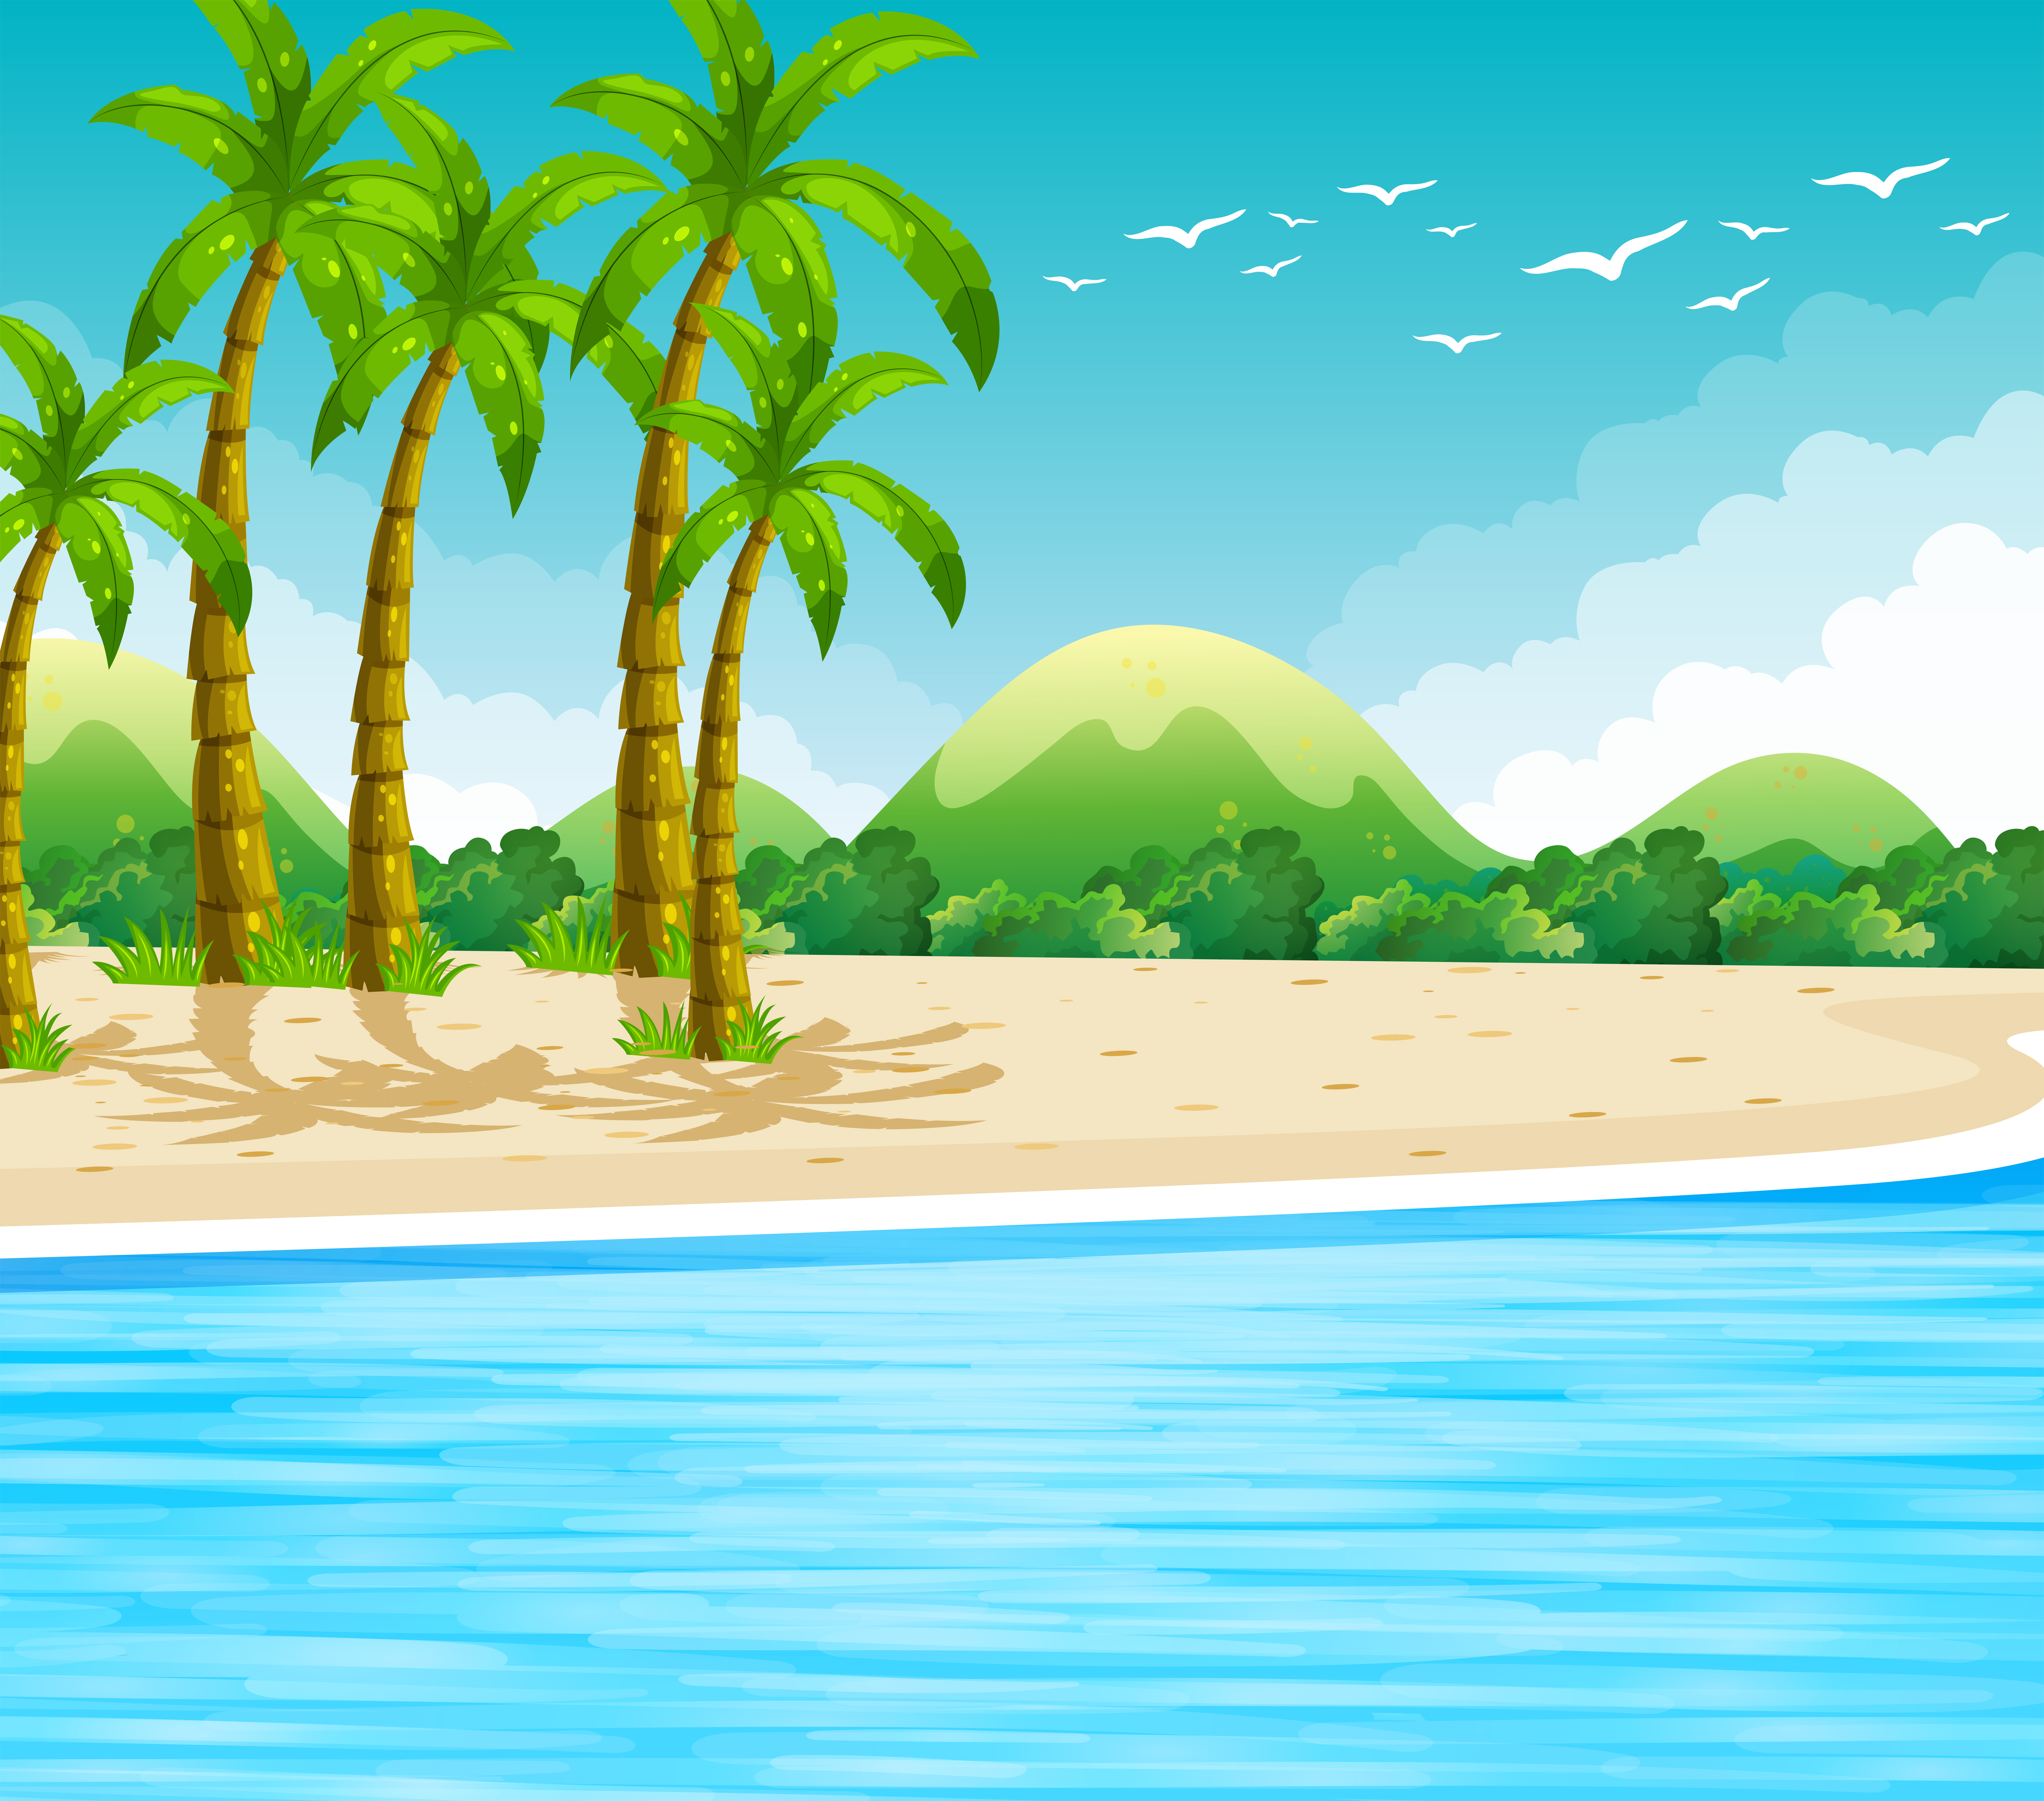 Ocean Cartoon Free Vector Art - (3,542 Free Downloads)